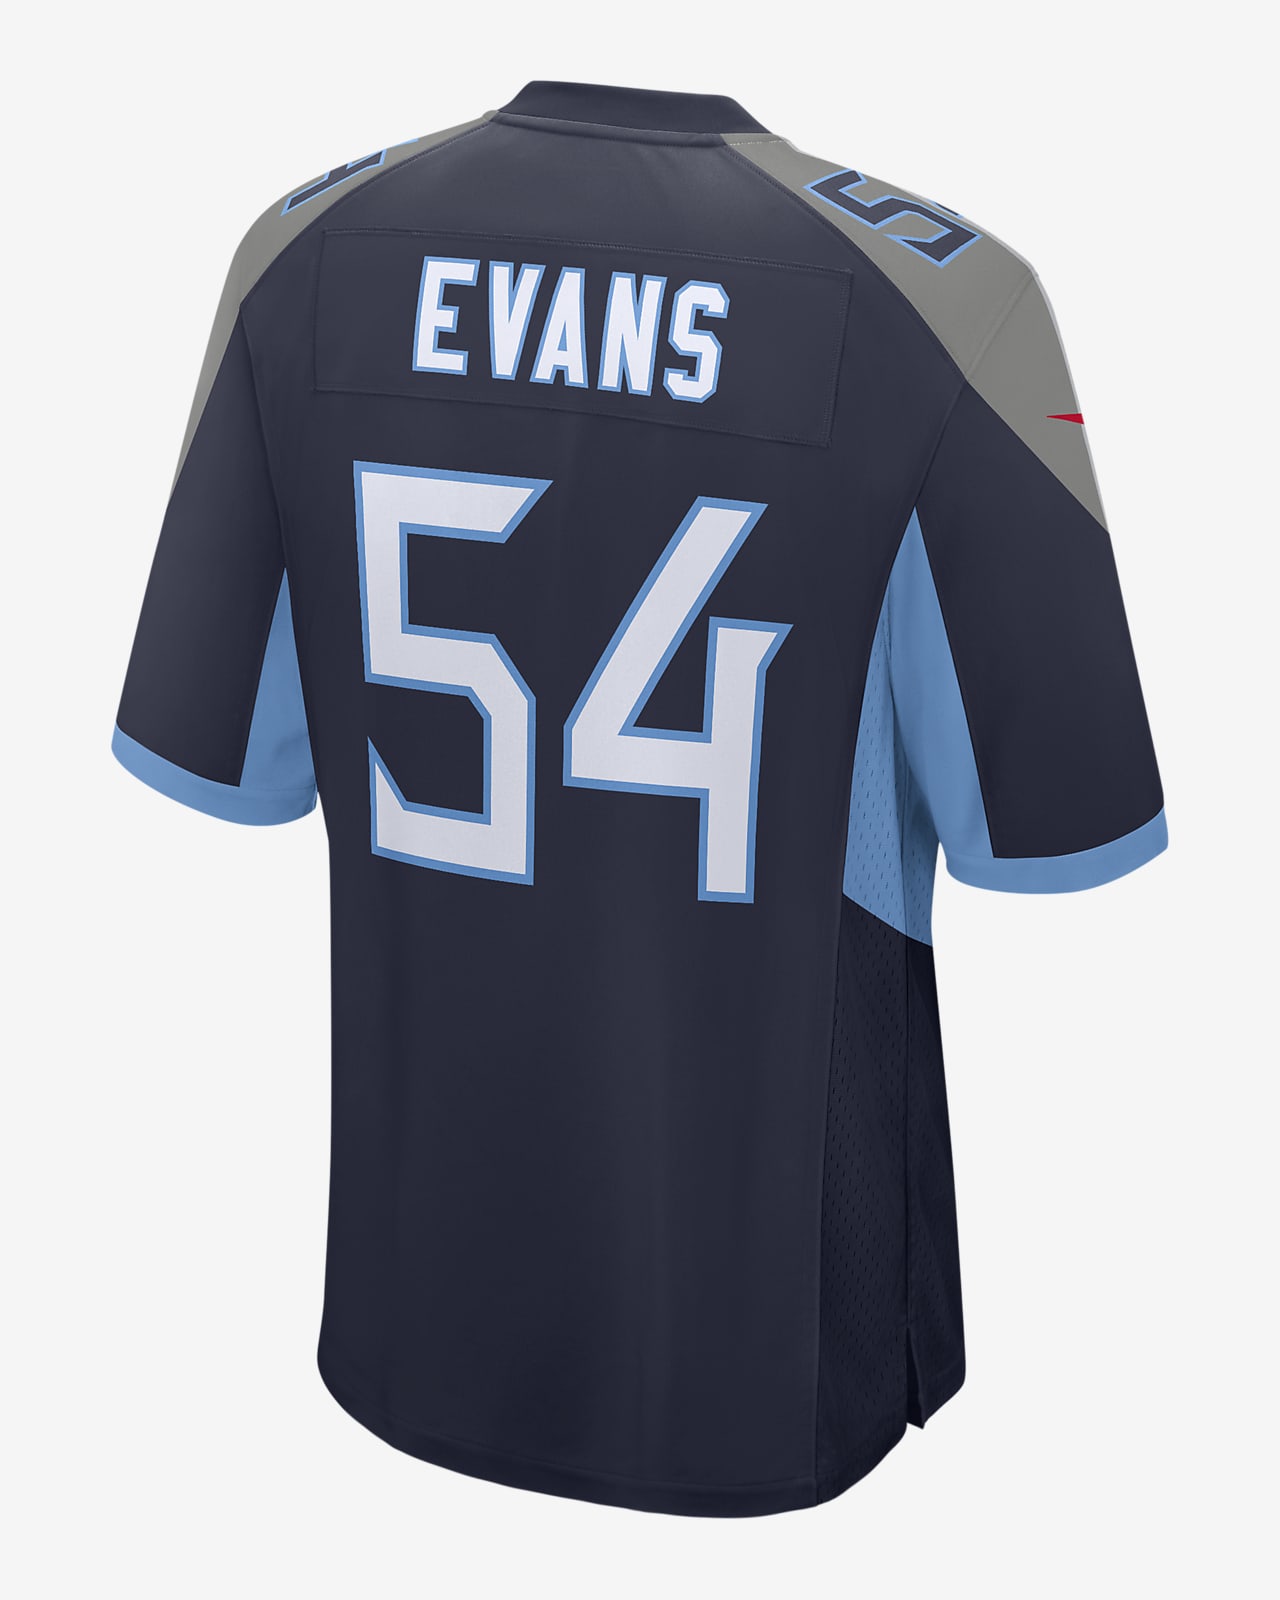 اكسيد المغنيسيوم NFL Tennessee Titans (Rashaan Evans) Men's Game Football Jersey اكسيد المغنيسيوم